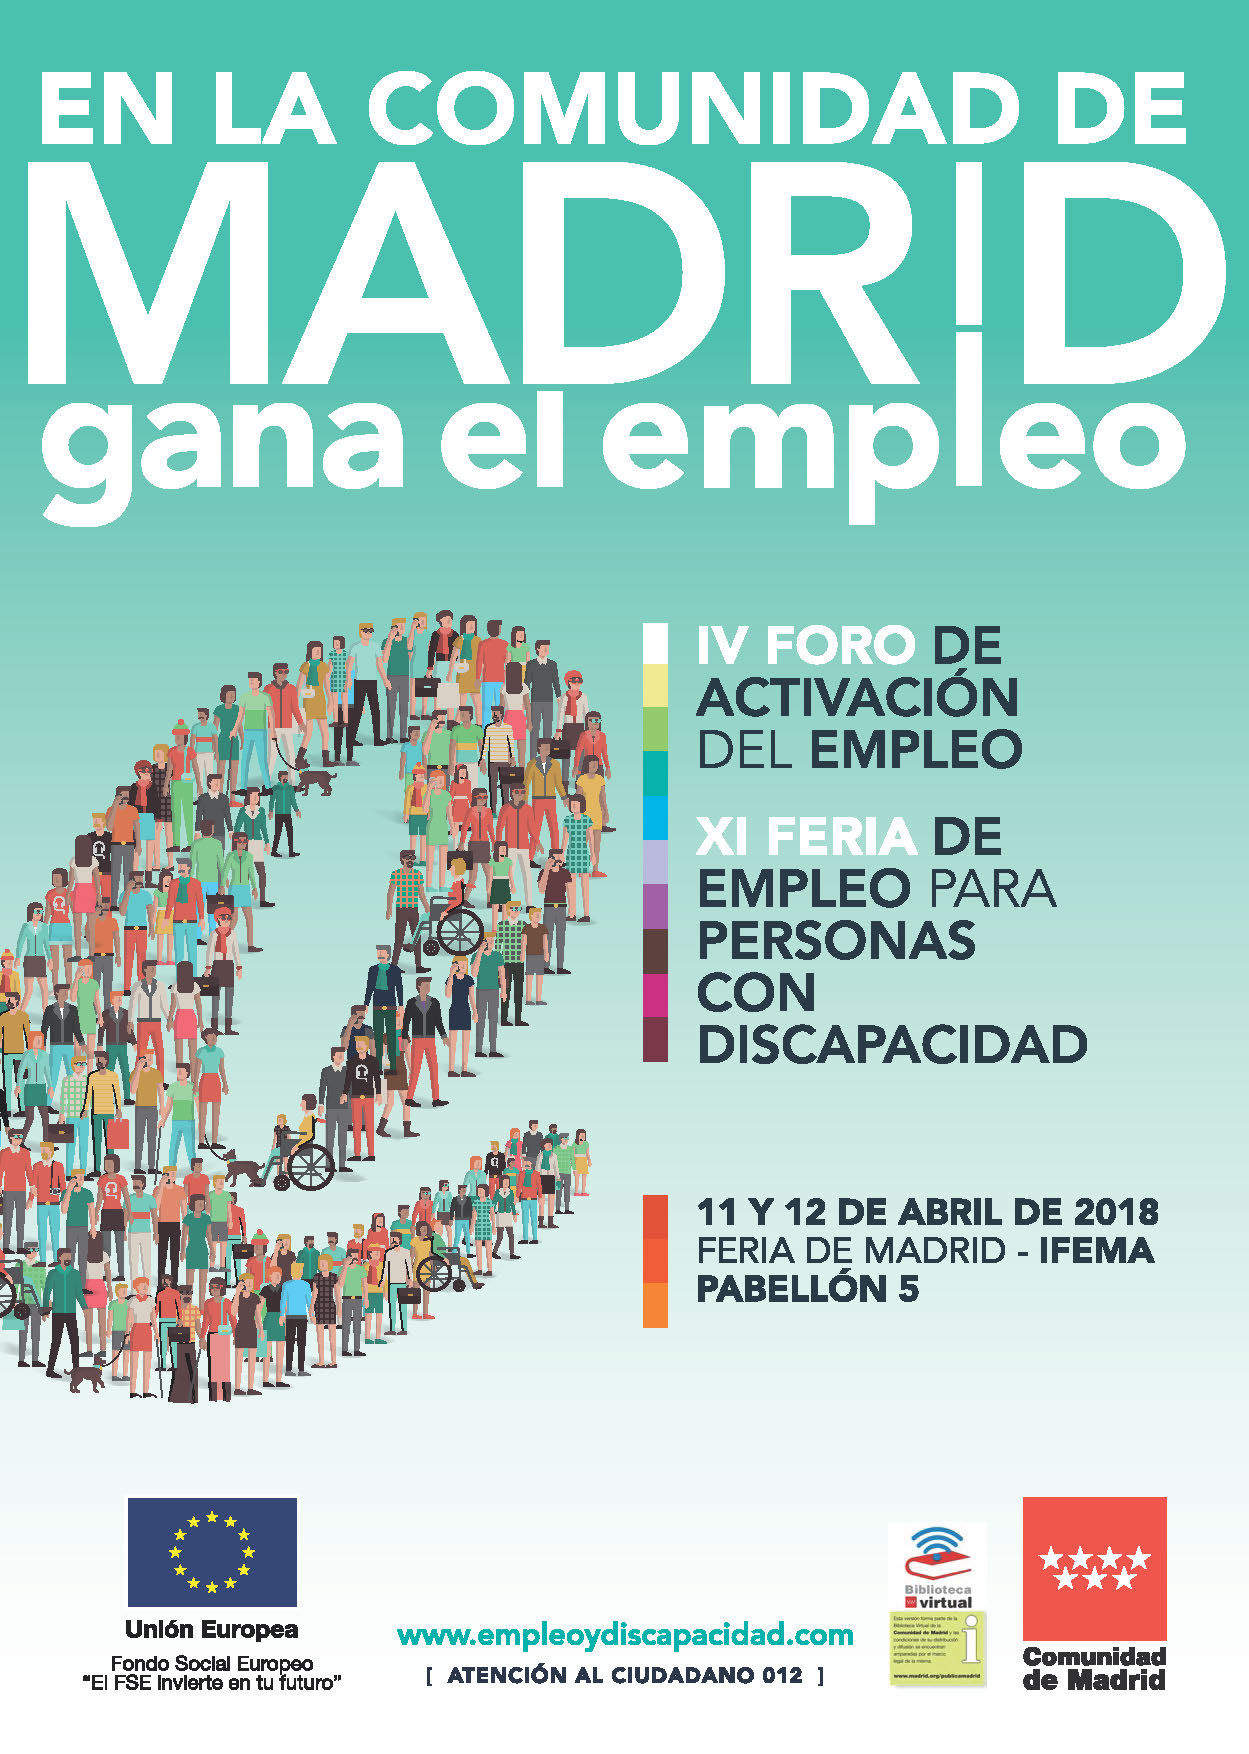 Portada de Cartel promocional de la XI Feria de Empleo para Personas con Discapacidad y IV Foro de Activación del Emleo de la Comunidad de Madrid.